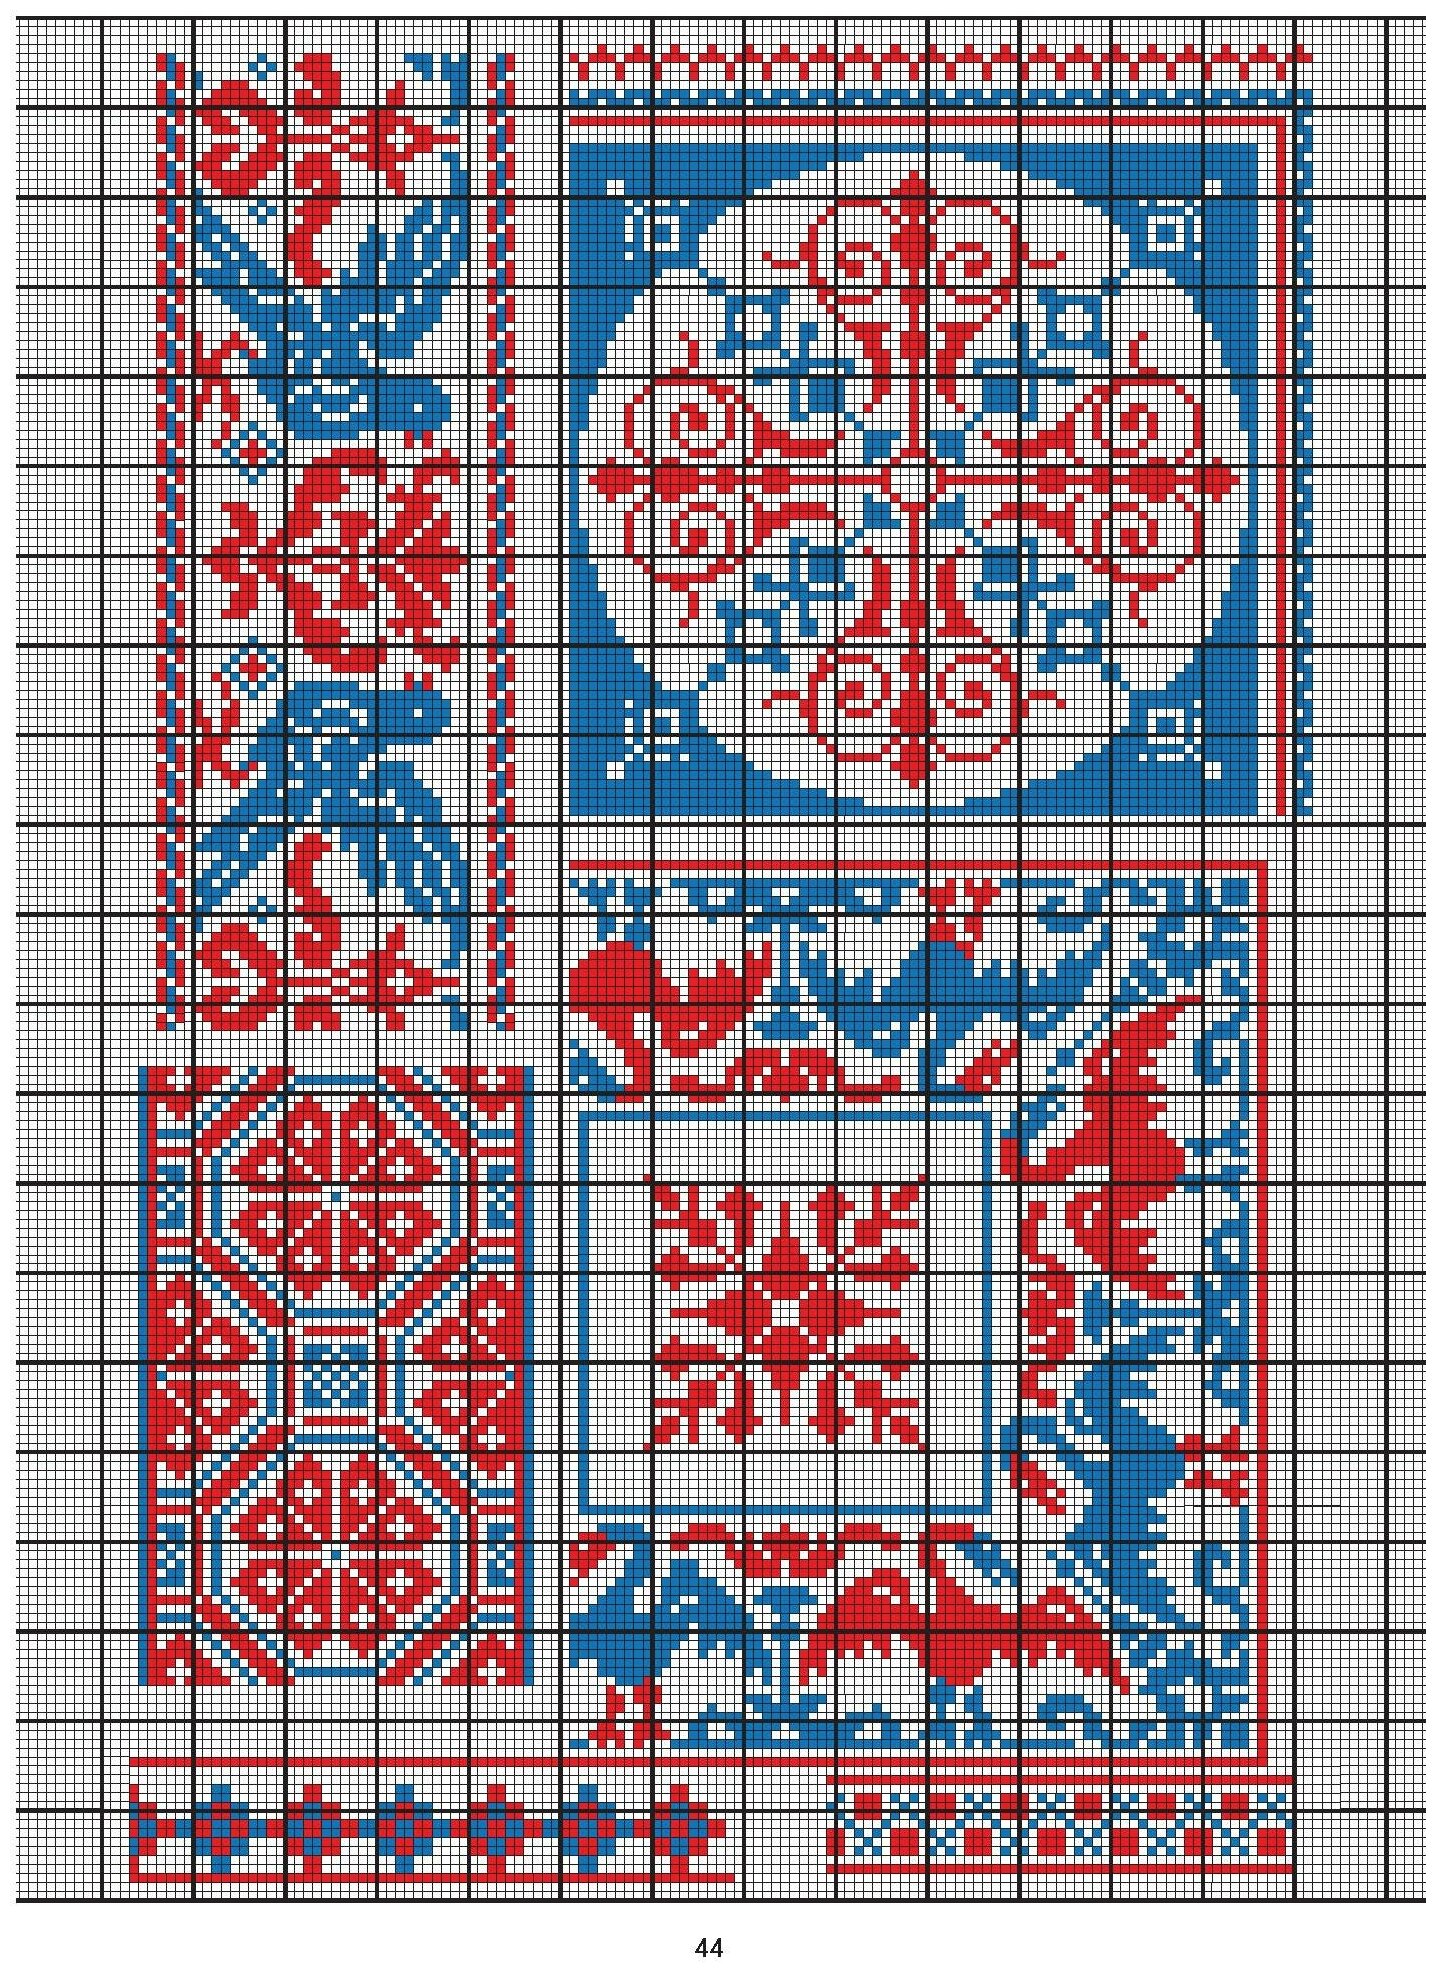 Русские узоры для вышивания крестом Более 100 подробных схем Коллекция вышивок собранная К Д Далматовым и исполненная в 1889 году - фото №9